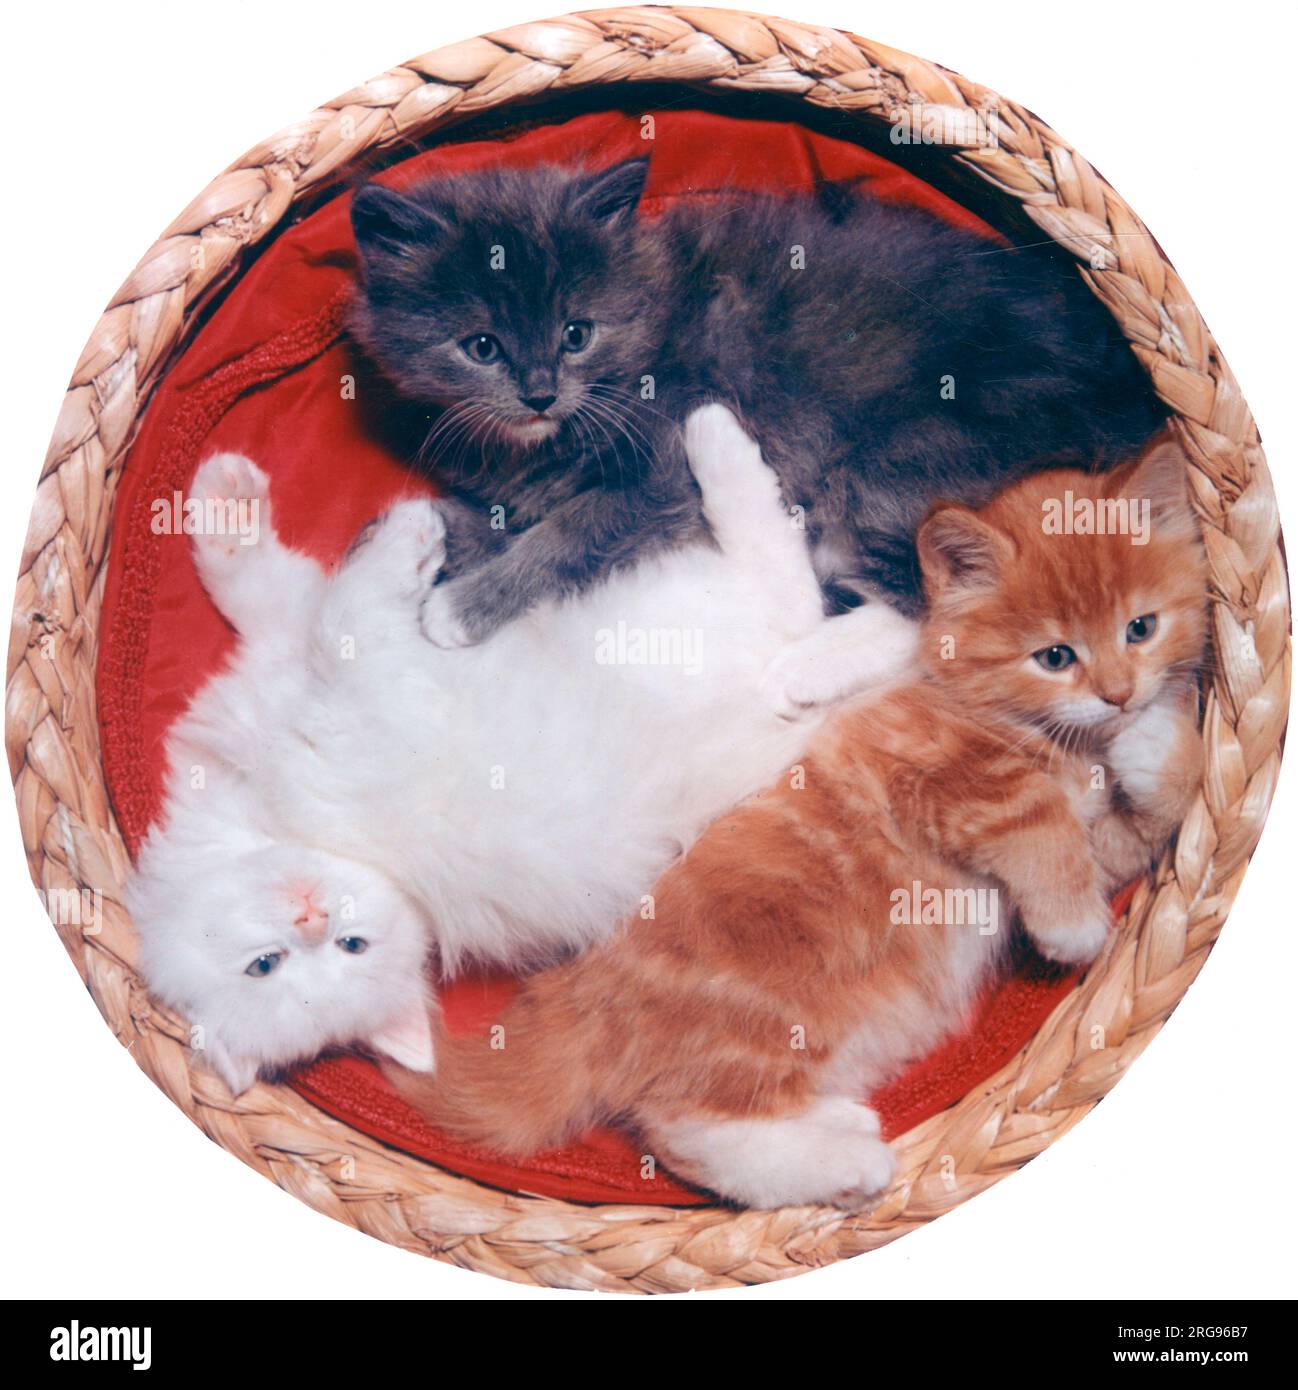 Drei süße Kätzchen, die auf einem roten Kissen in einem Korb liegen -- eine weiße, eine graue, eine Tabby. Stockfoto